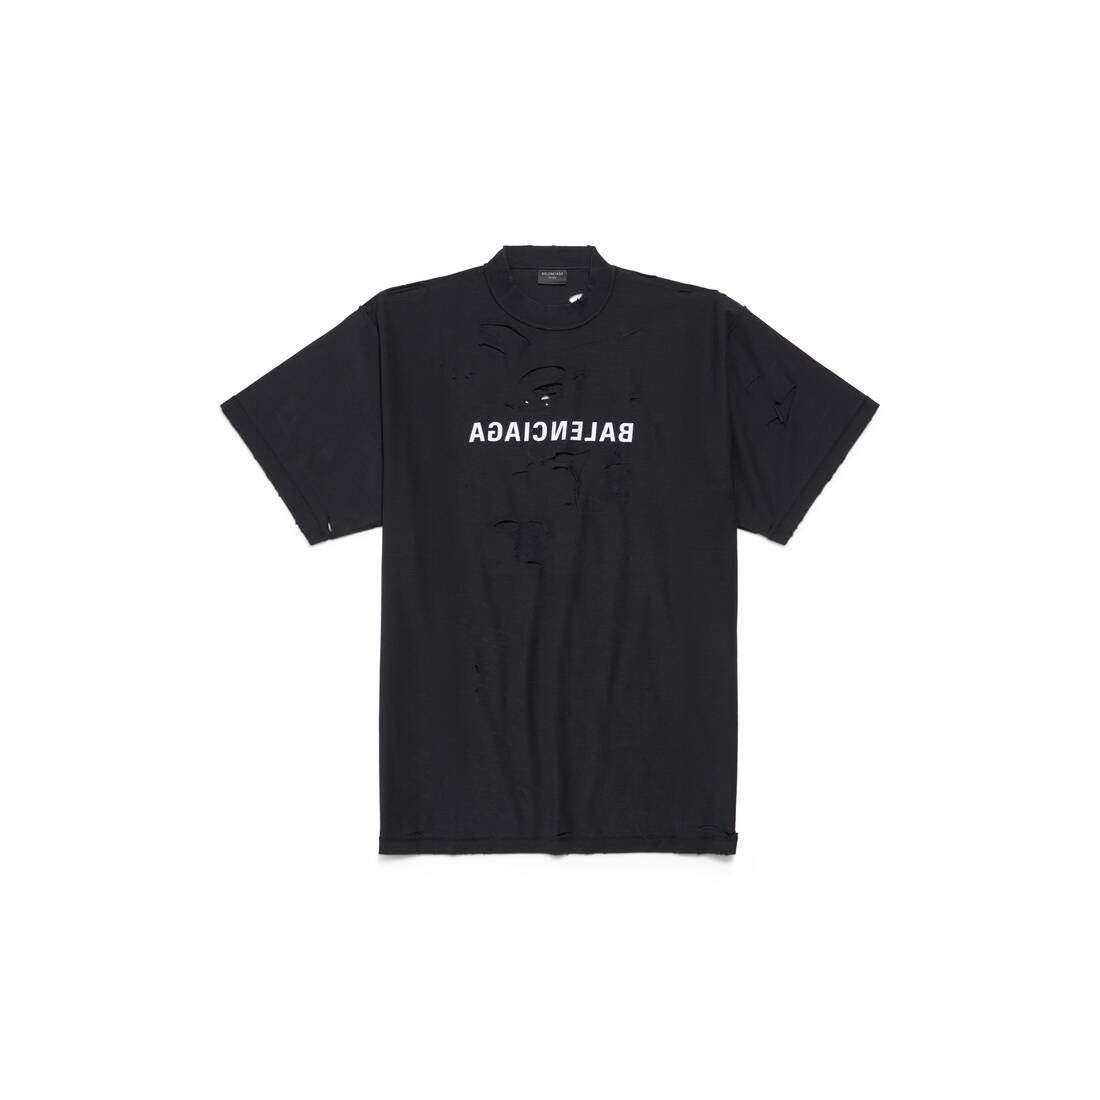 Mirror Balenciaga Inside Out Tシャツ オーバーサイズ で ブラック/ホワイト